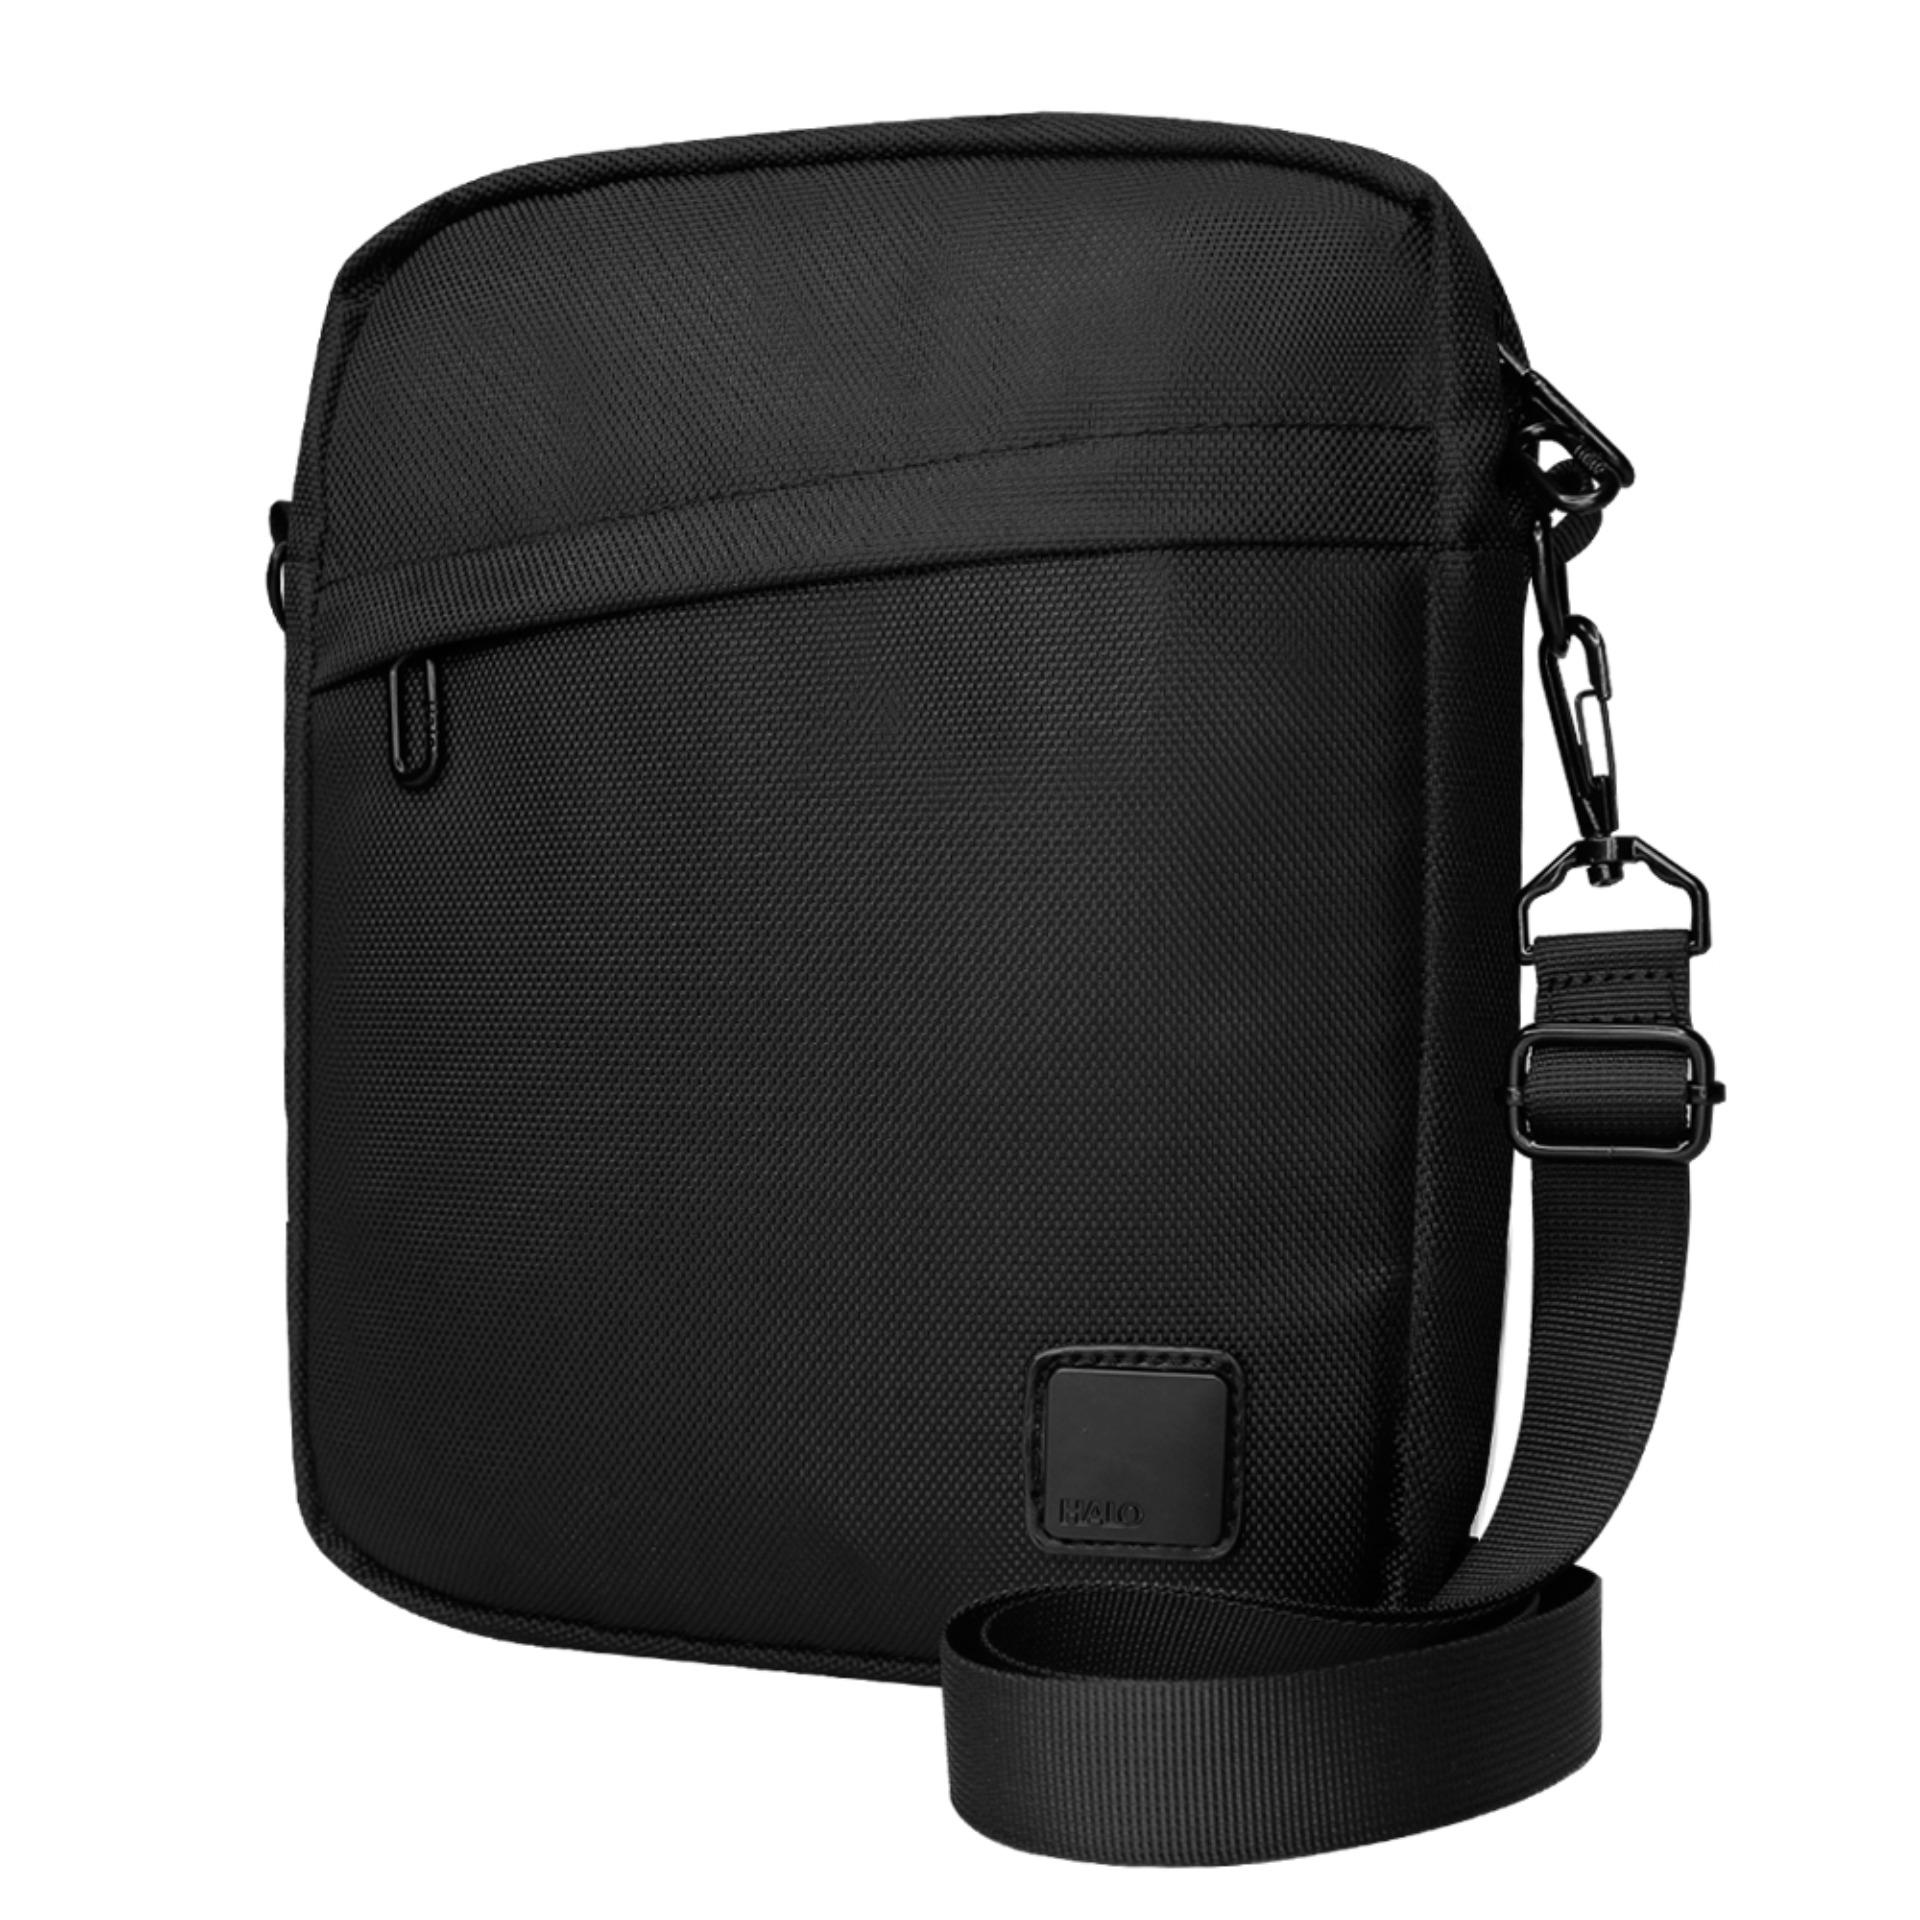 Halo Philippines: Halo price list - Backpack, Shoulder Bag & Laptop ...